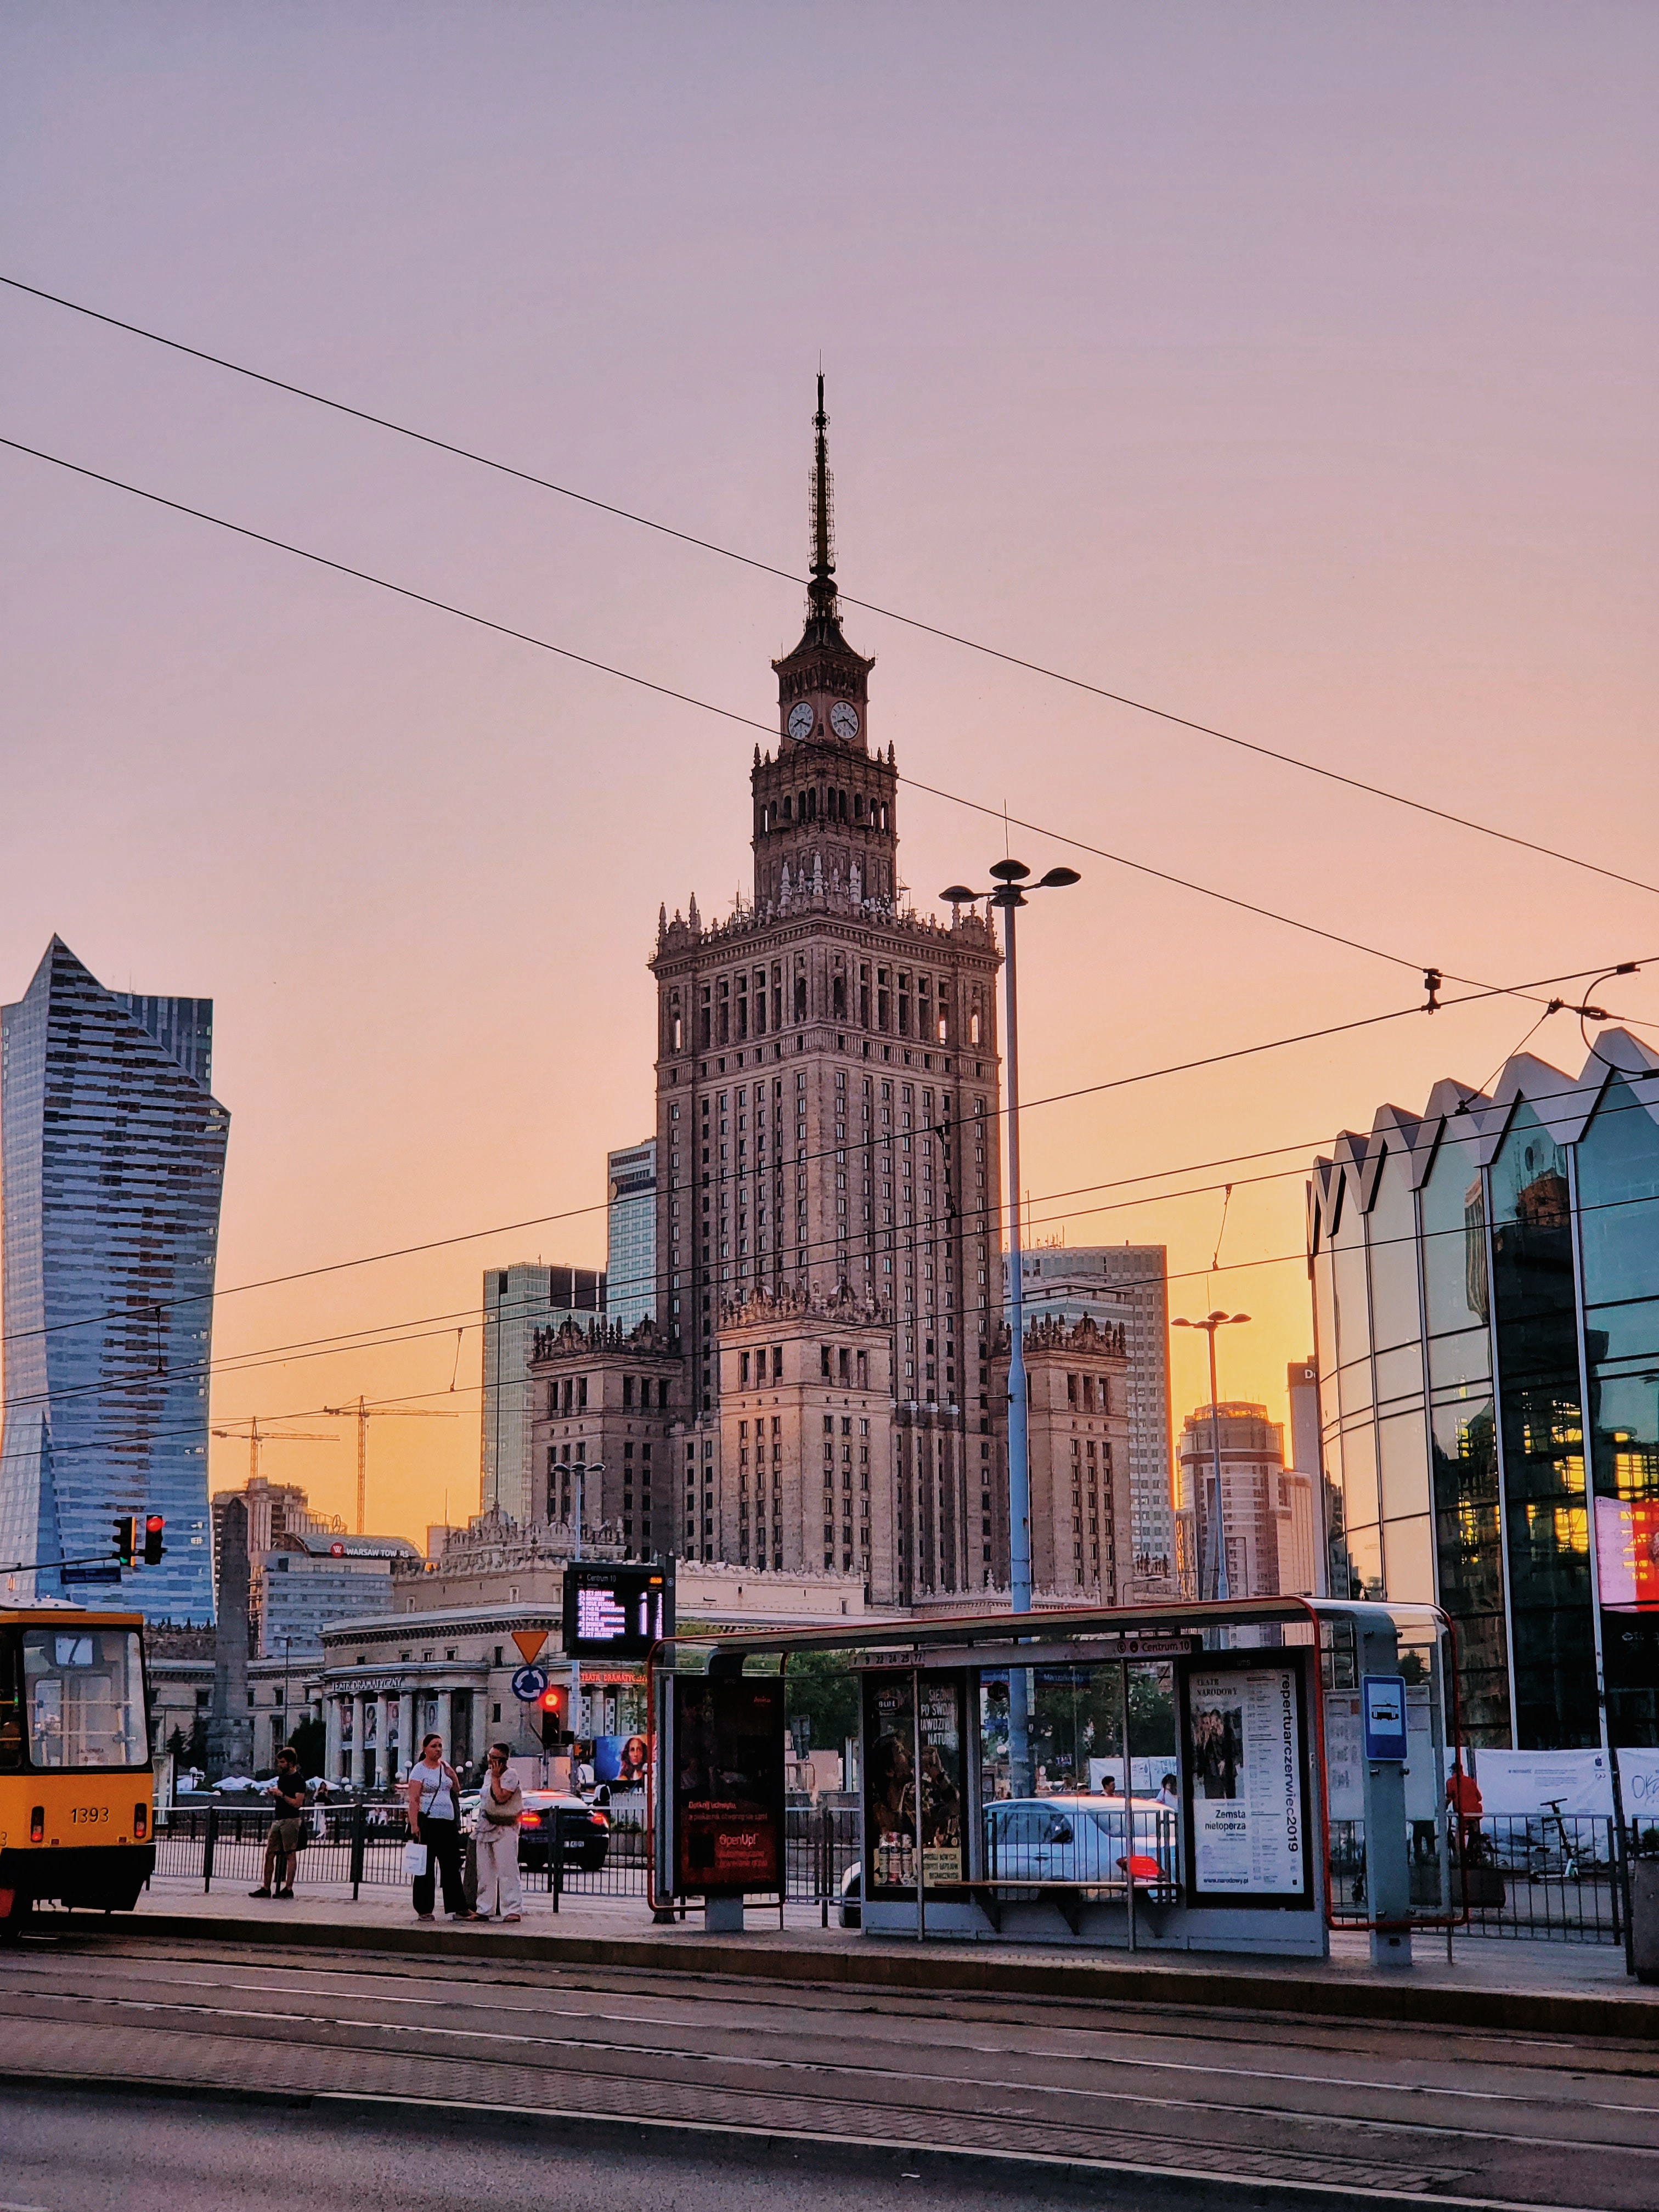 Ochrona biura w Warszawie  — czy warto korzystać z usług agencji?